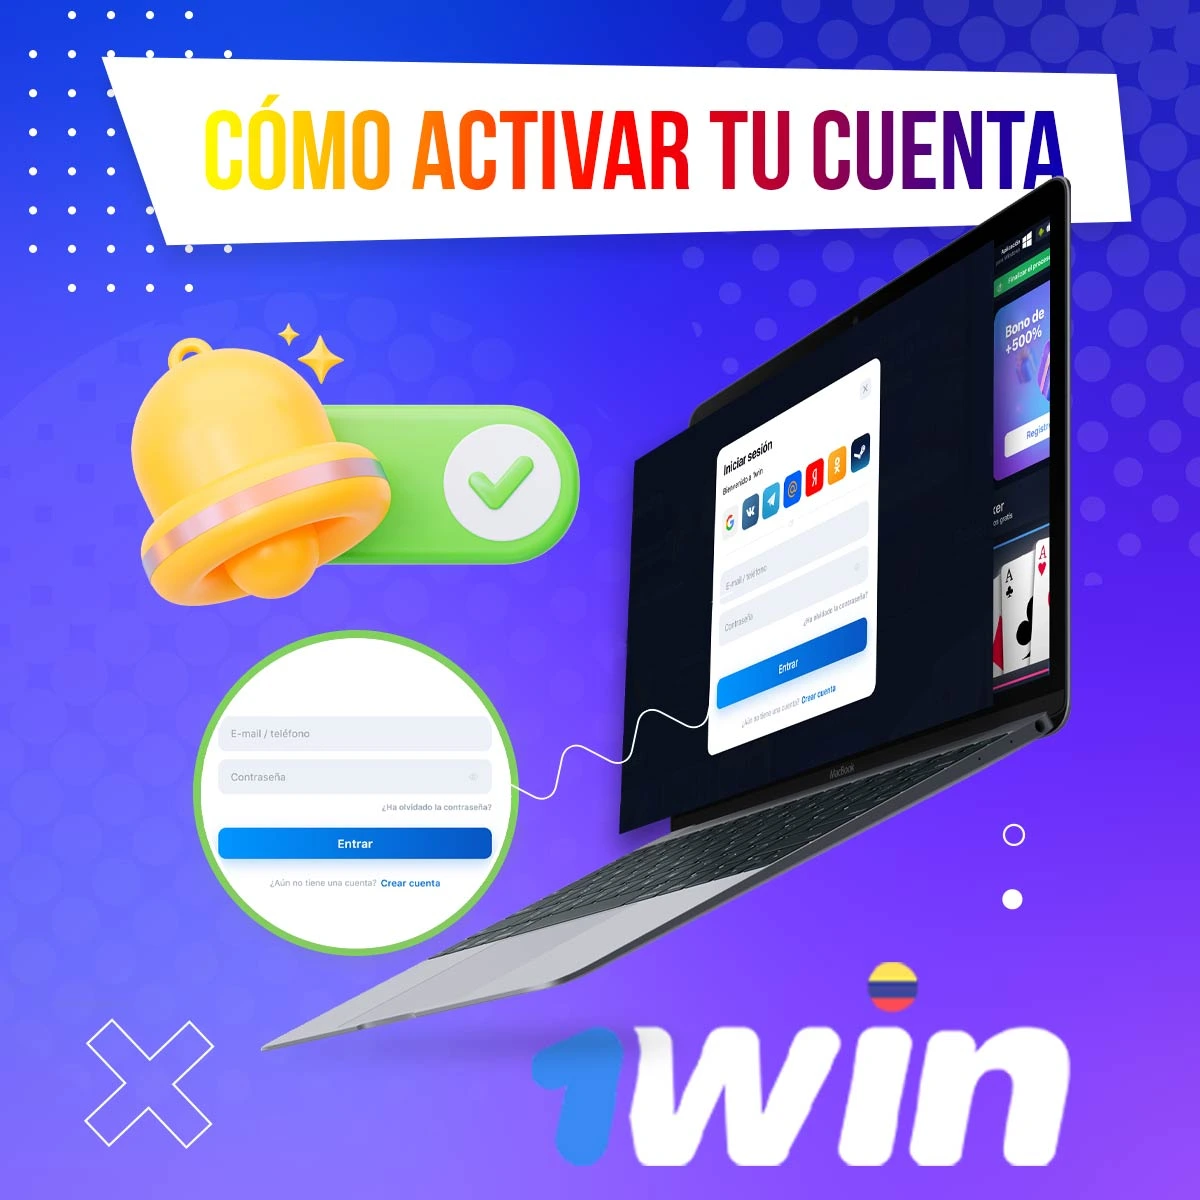 Guía paso a paso para activar tu cuenta 1win Colombia